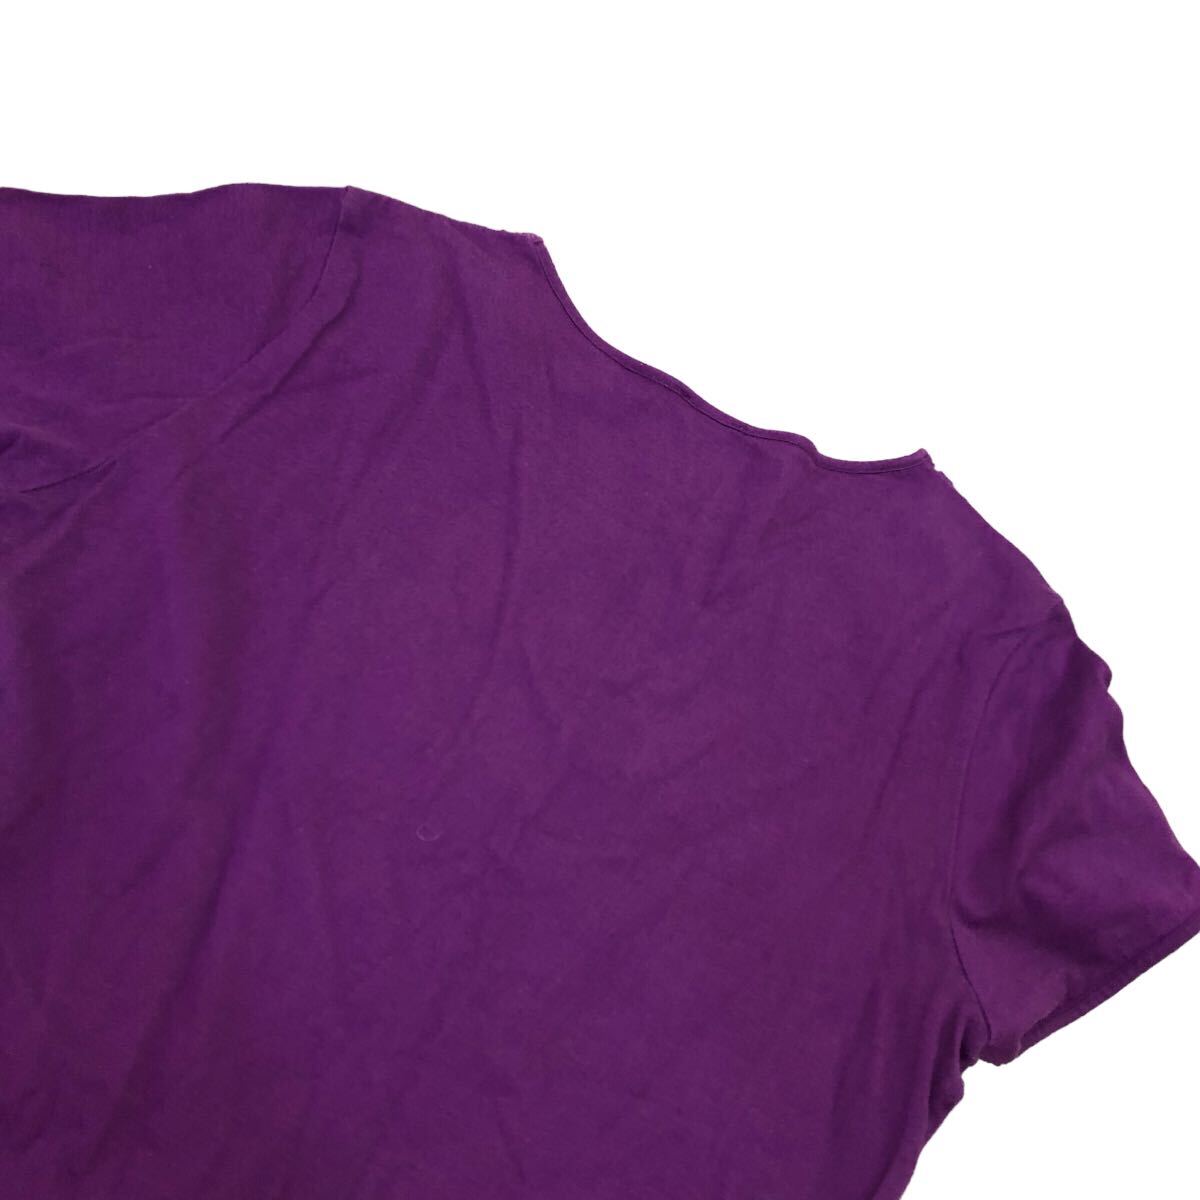 S209③ 日本製 Paul+ Paul Smith ポールスミス Tシャツ 半袖Tシャツ トップス 半袖 綿100% レディース M パープル 紫_画像6